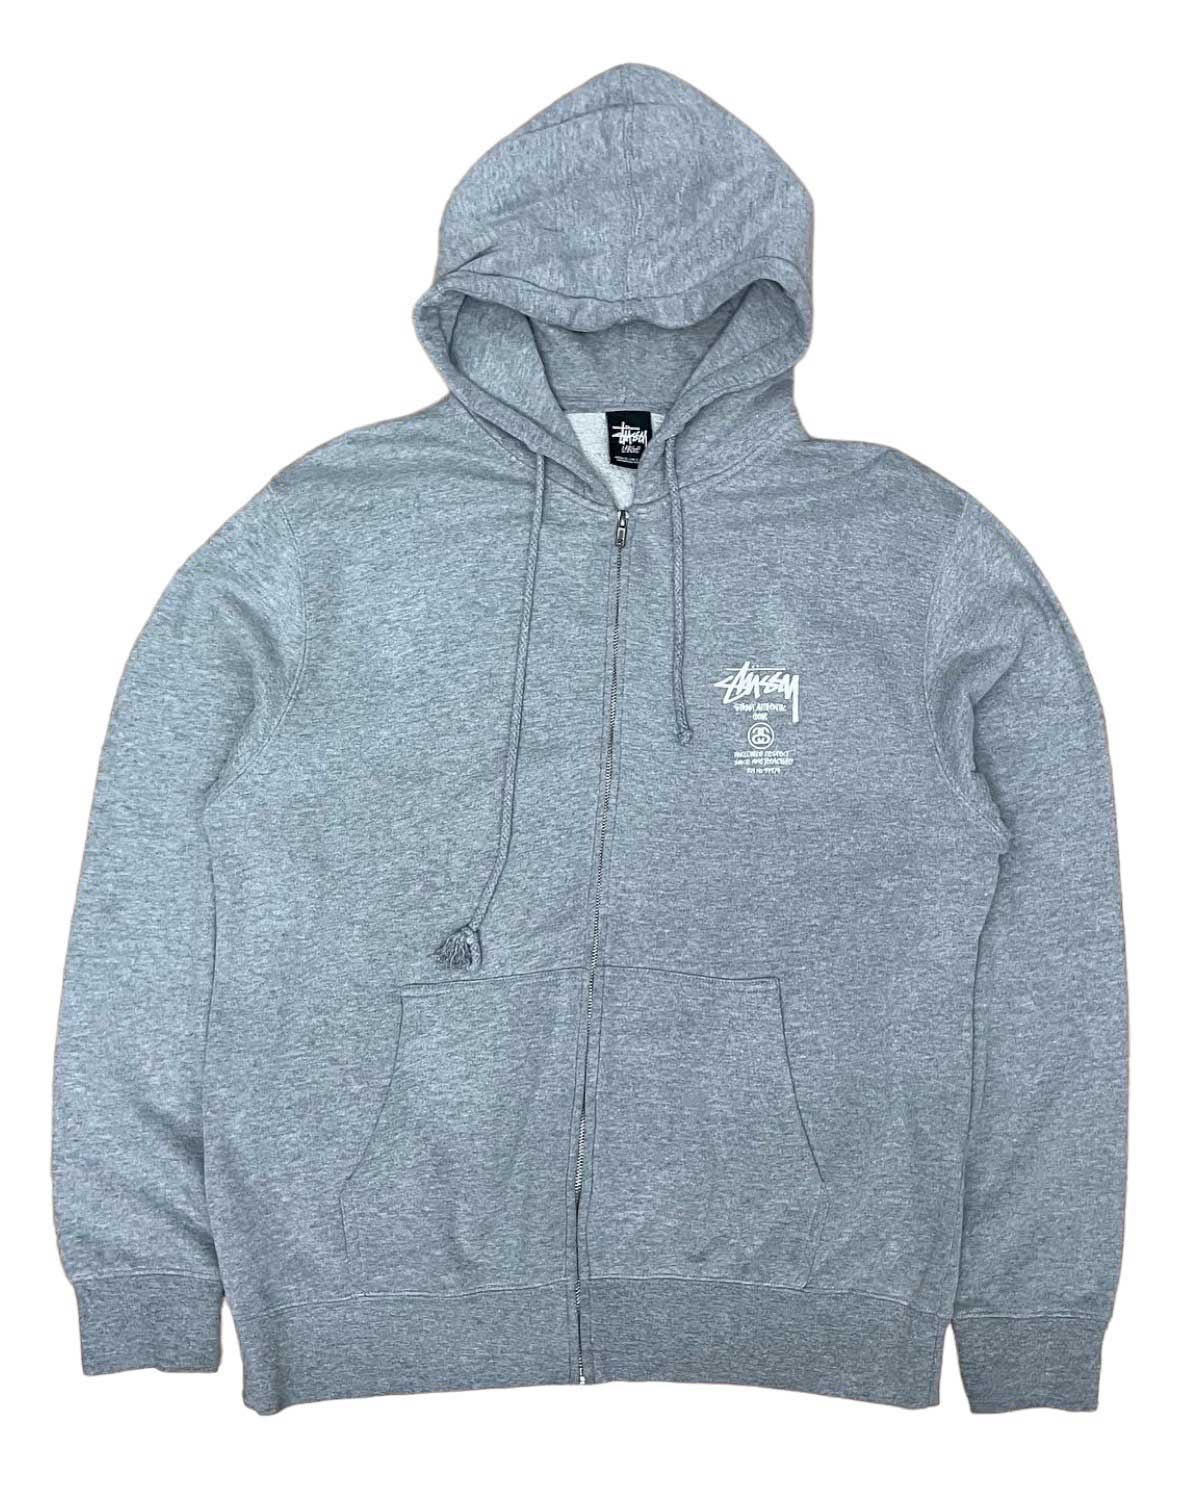 Vintage Stussy logo zipup hoodie gray